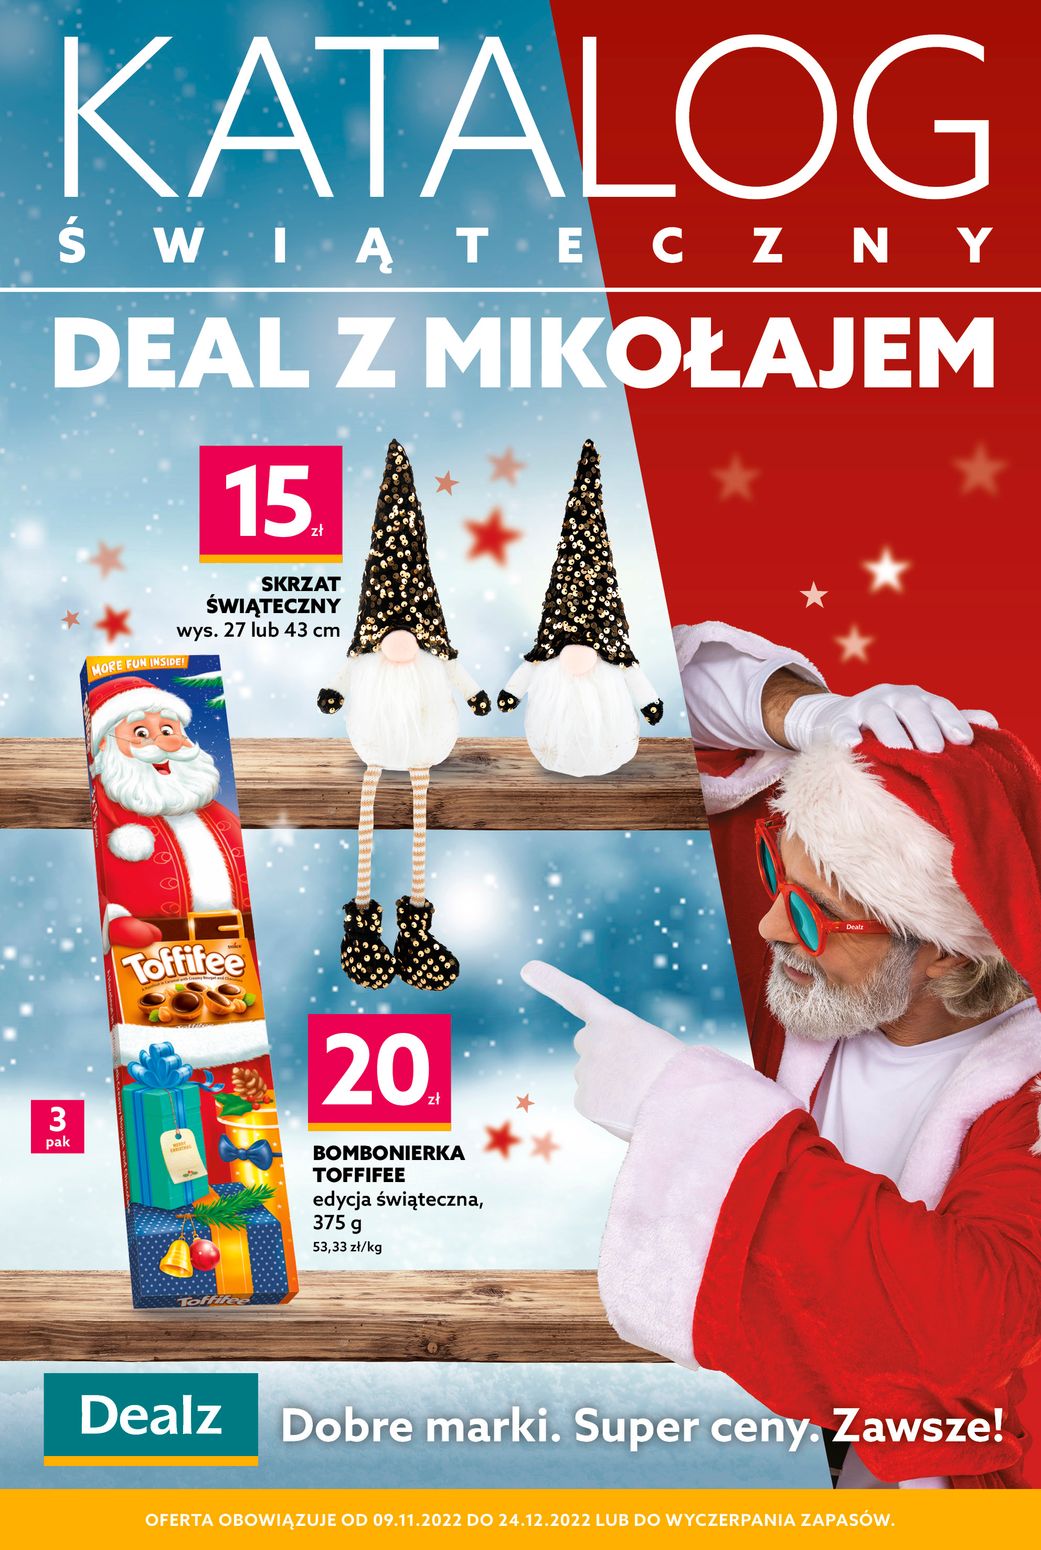 gazetka promocyjna Dealz – Katalog Świąteczny – Deal z Mikołajem! - Strona 1